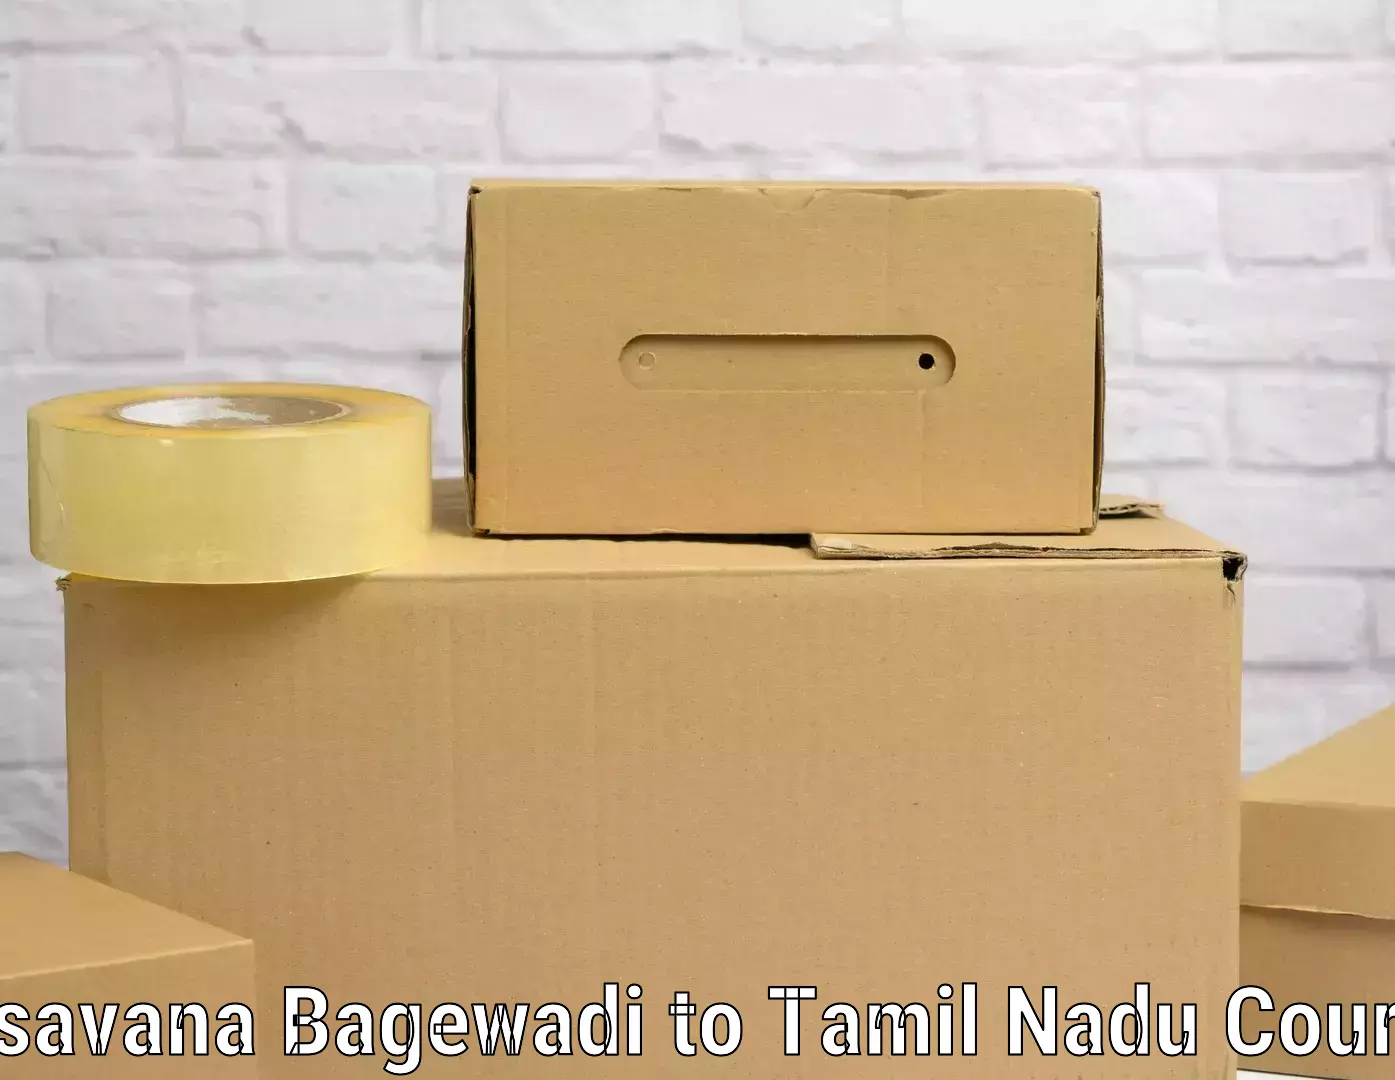 Professional baggage transport Basavana Bagewadi to Tamil Nadu